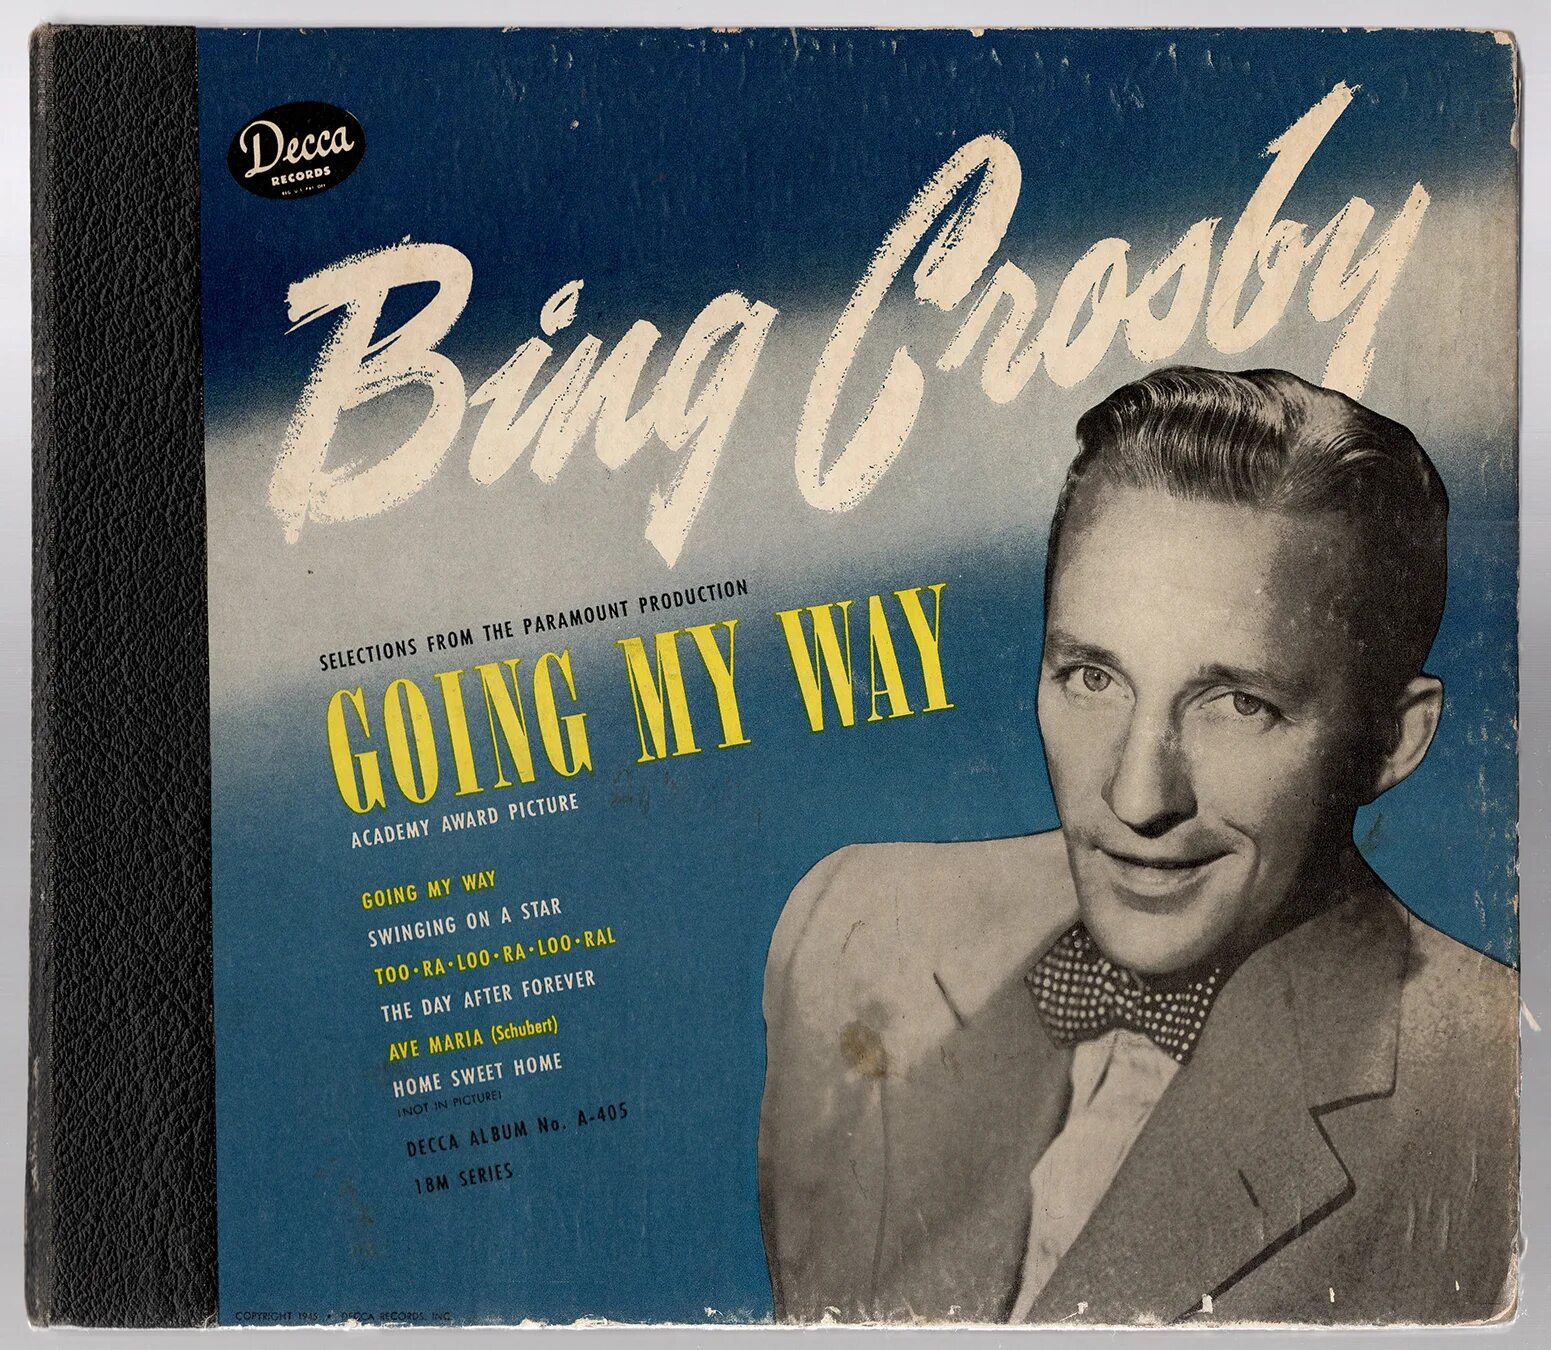 Май гоу песни. Обложки Bing Crosby. Bing Crosby swinging on a Star. Bing Crosby Decca Collector's Classics. Bing Crosby Award.